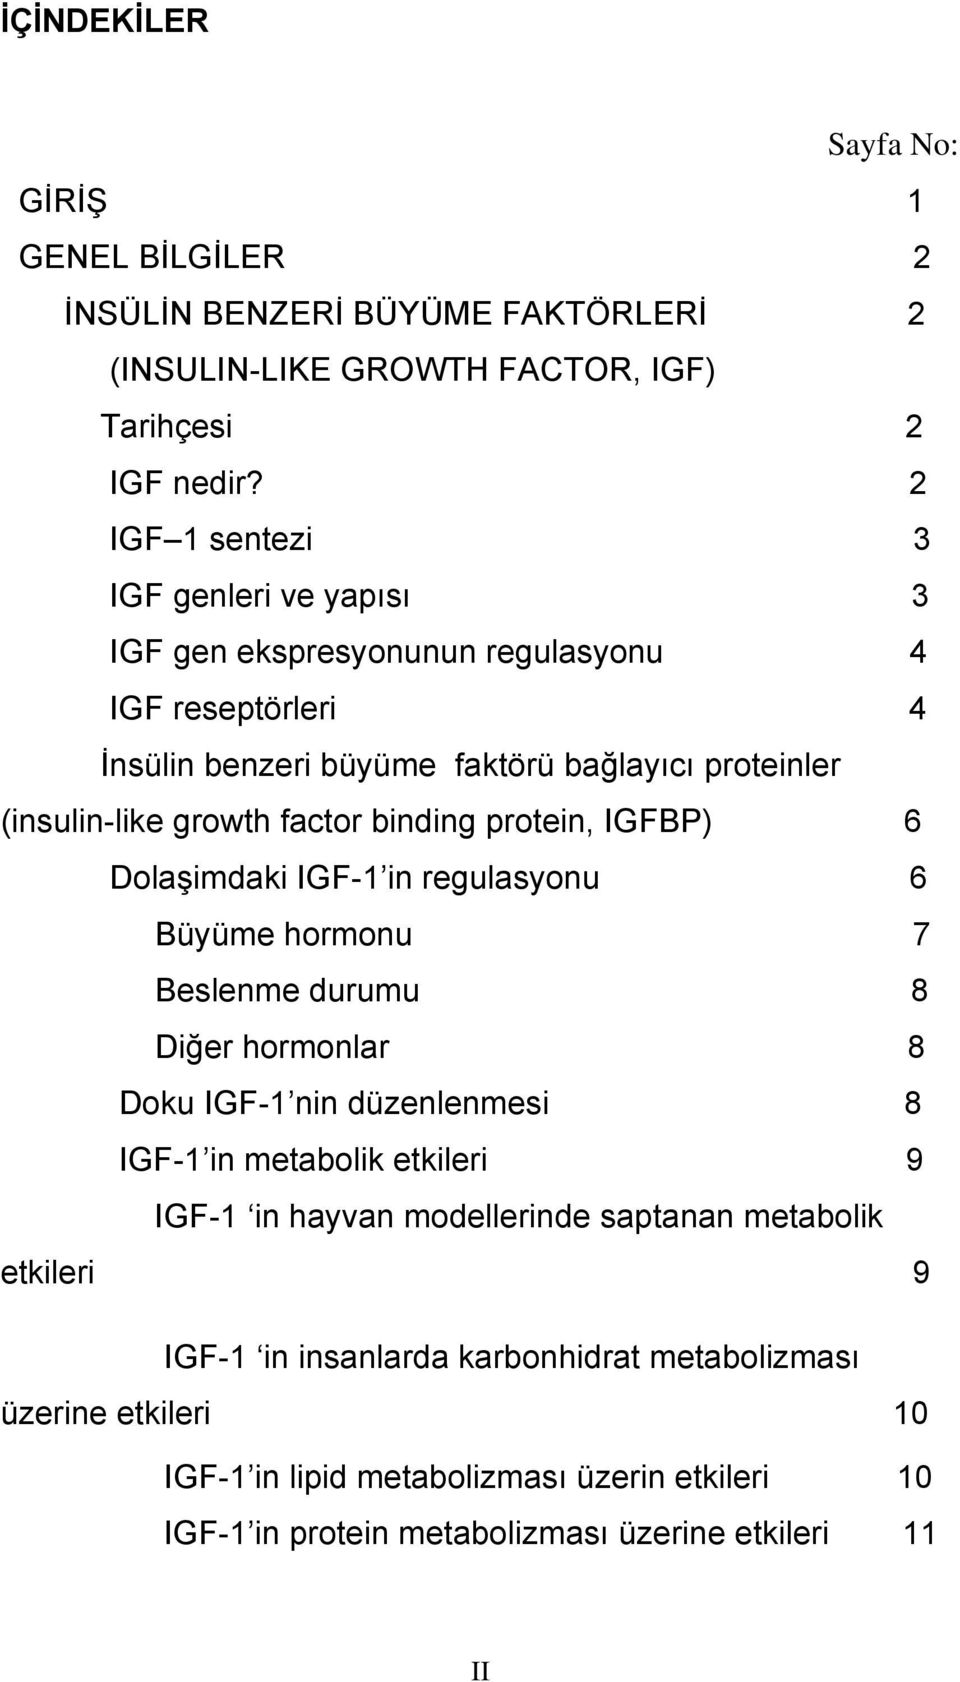 binding protein, IGFBP) 6 Dolaşimdaki IGF-1 in regulasyonu 6 Büyüme hormonu 7 Beslenme durumu 8 Diğer hormonlar 8 Doku IGF-1 nin düzenlenmesi 8 IGF-1 in metabolik etkileri 9 IGF-1